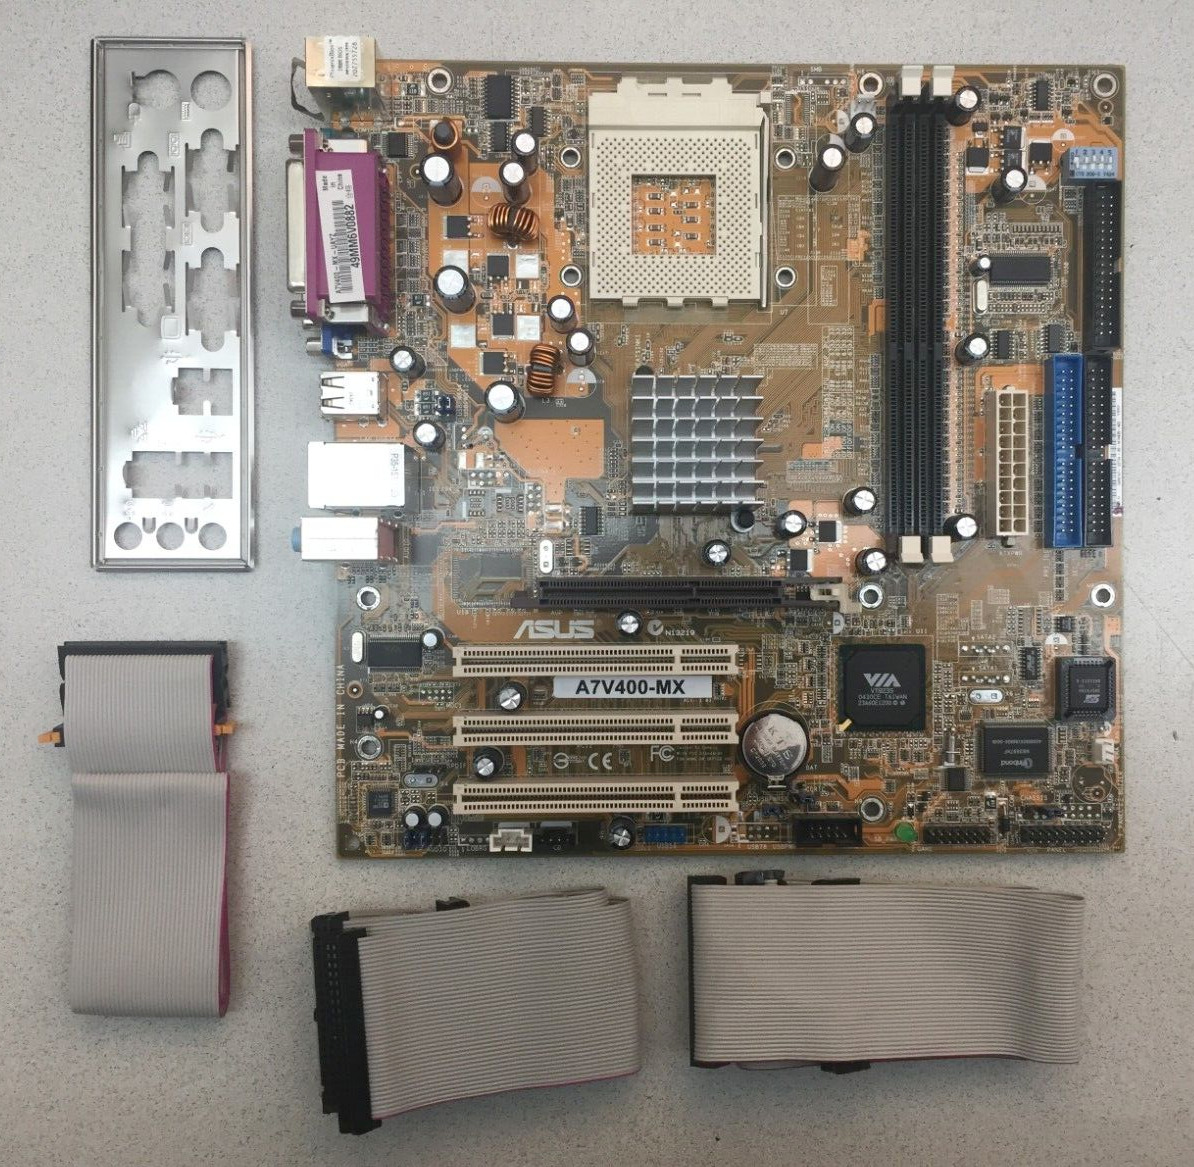 ASUS A7V400-MX Motherboard Socket 462